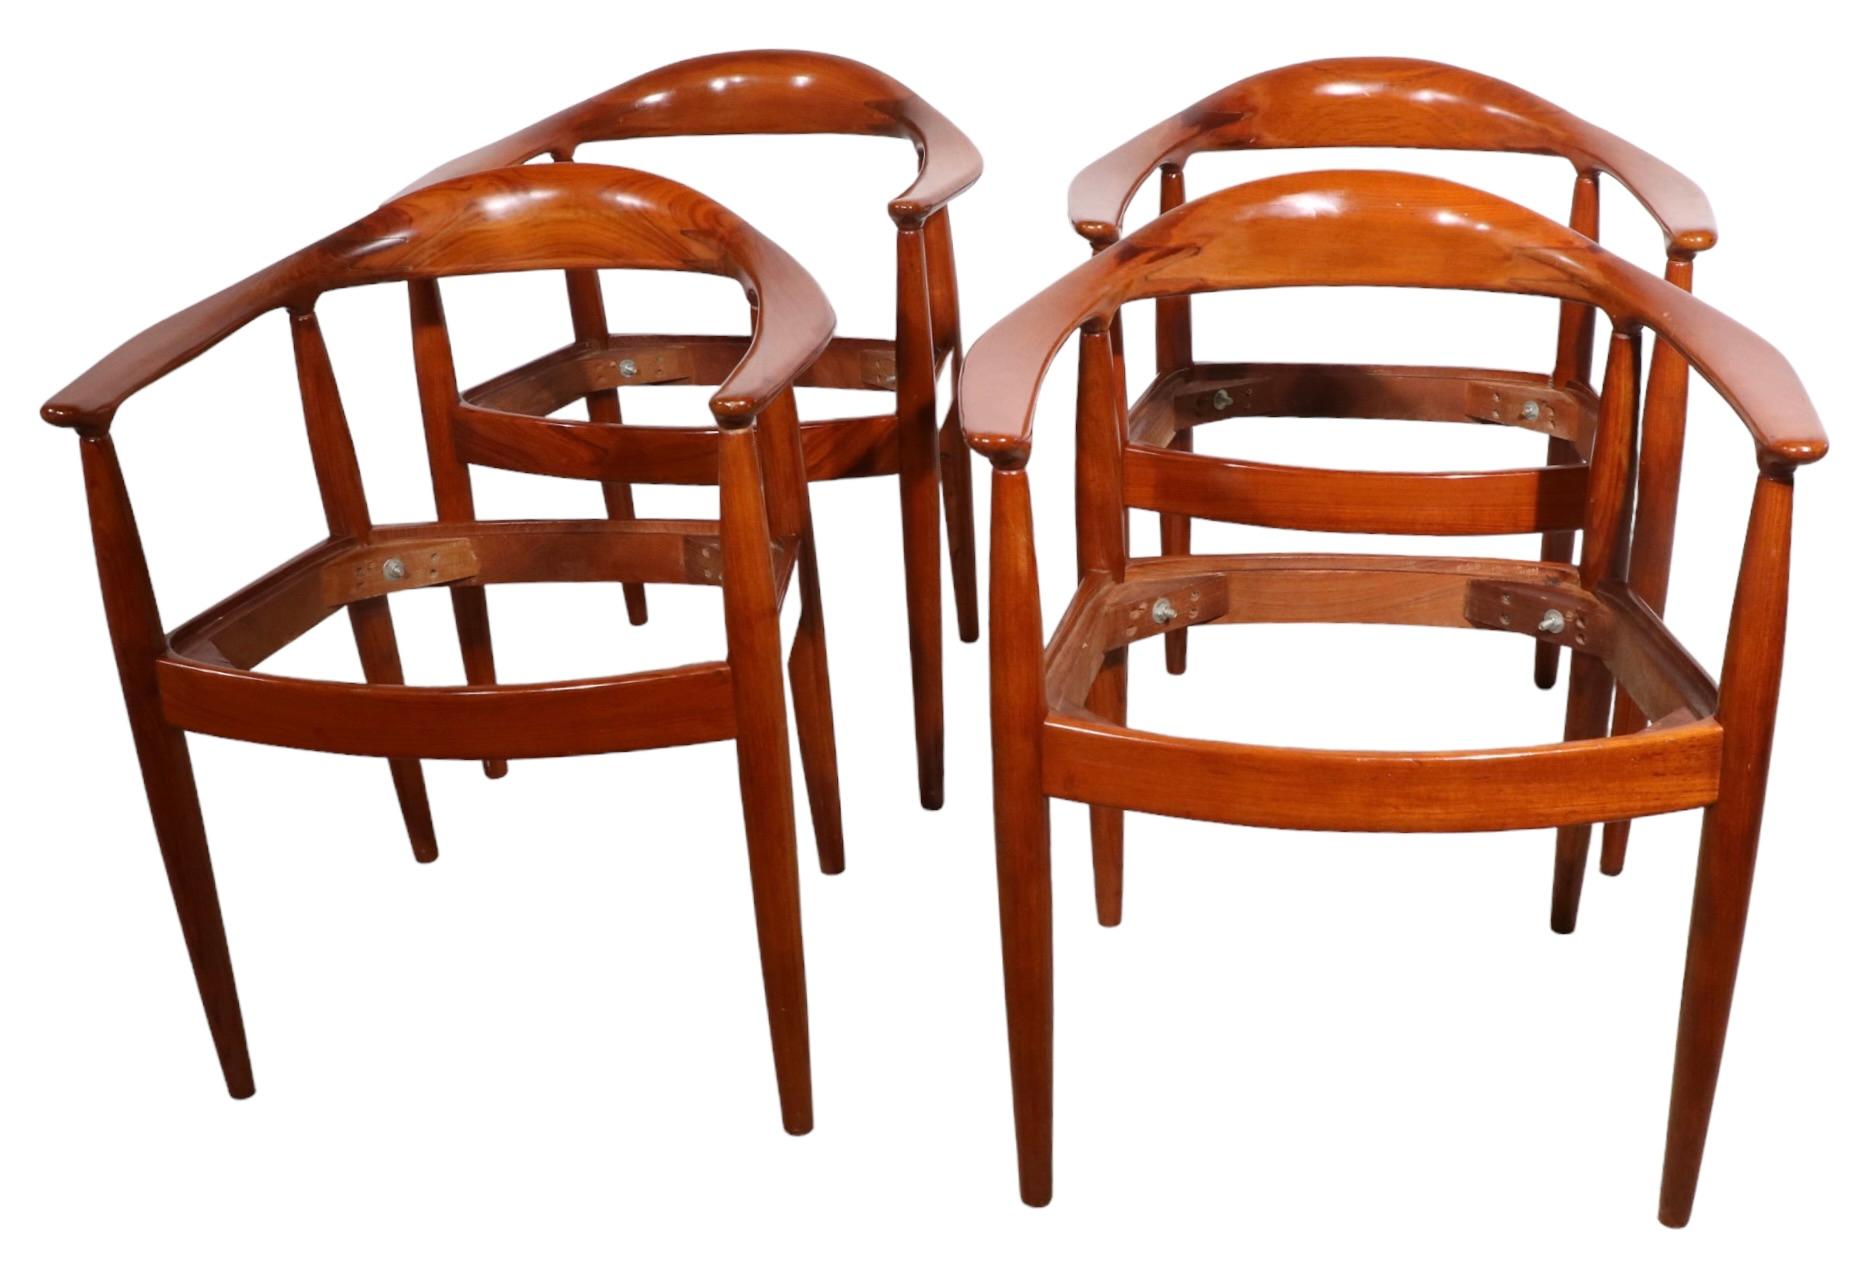 Ensemble de quatre chaises de salle à manger du milieu du siècle dernier, réalisées dans le style du design emblématique de Hans Werner, connu sous le nom de The Chair. Ces chaises sont bien faites et bien proportionnées, elles sont d'époque (milieu